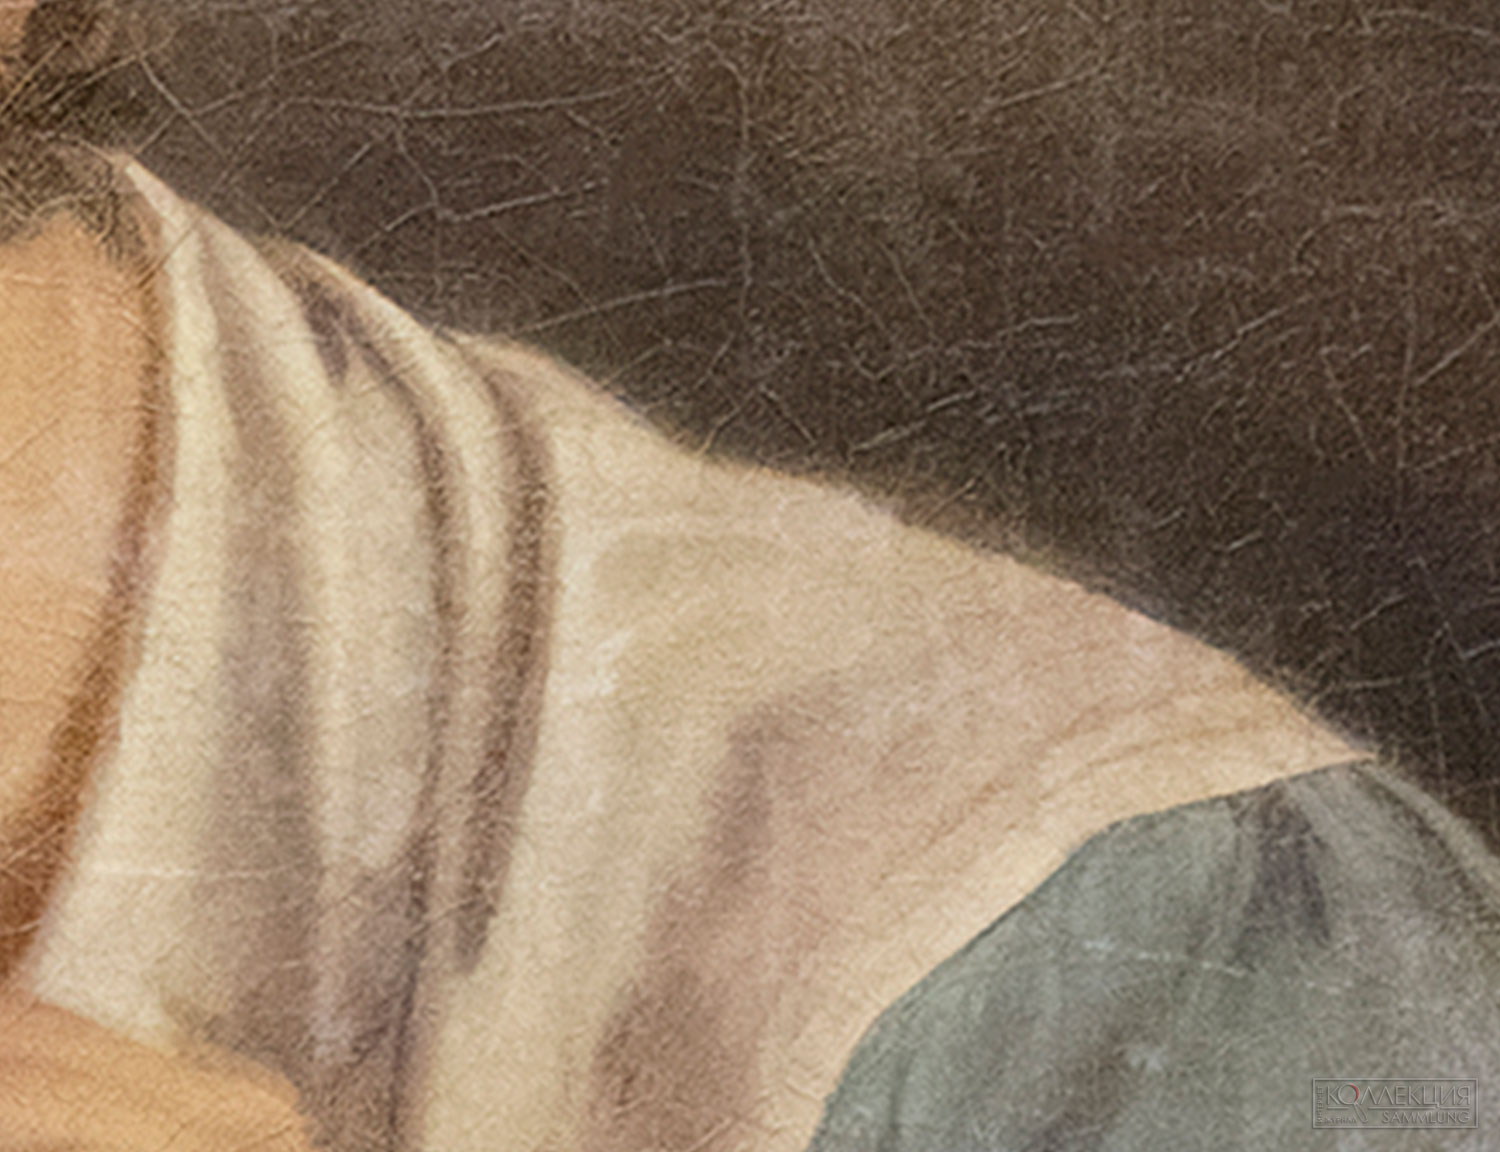 Тропинин В.А. Кружевница. 1820-е. Повторение одноименной картины (1823 ГТГ). Радищевский музей (фрагмент)